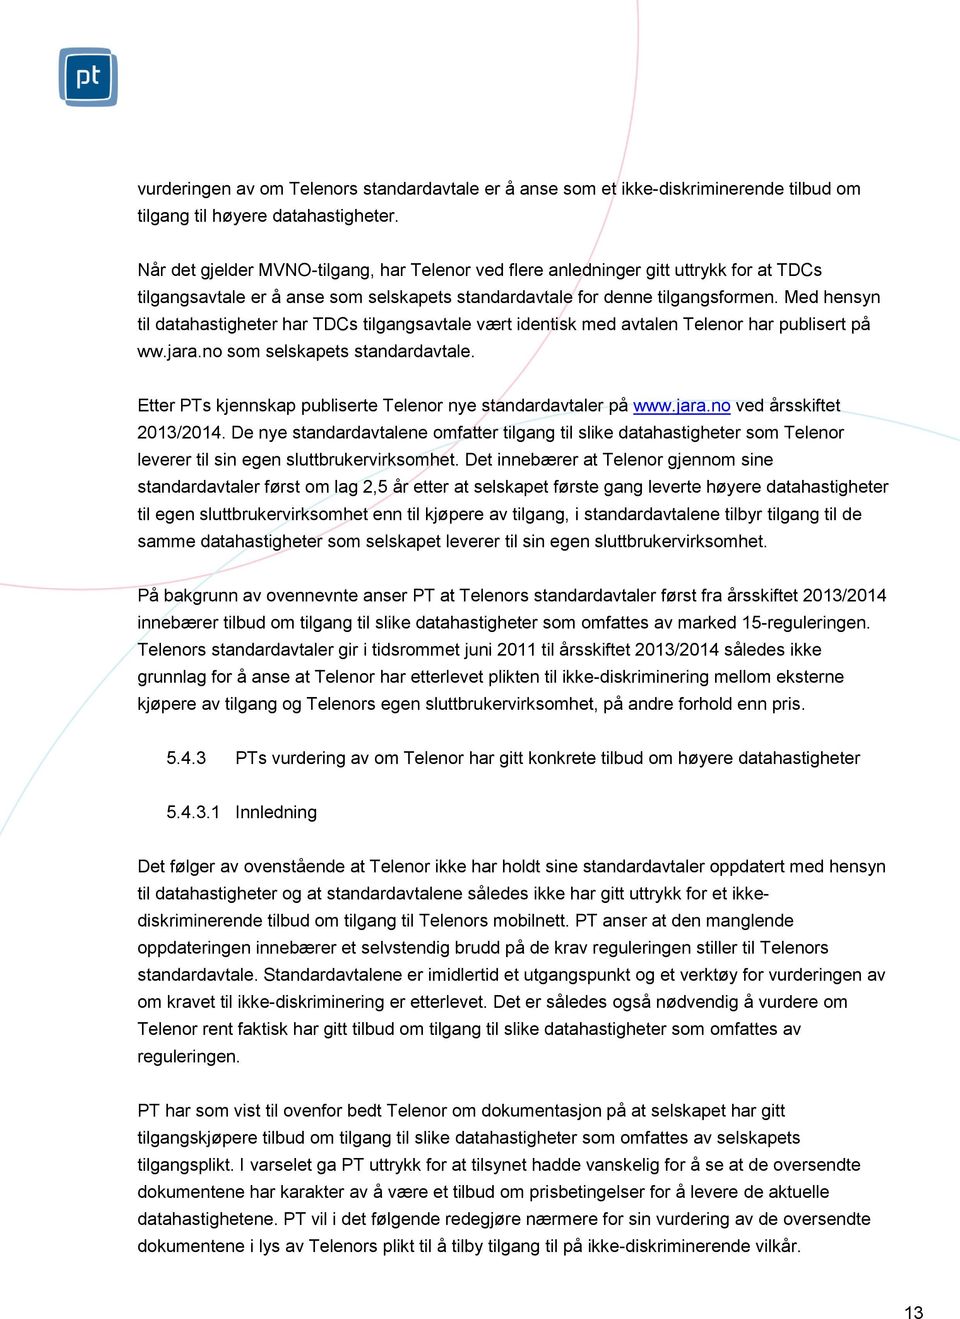 Med hensyn til datahastigheter har TDCs tilgangsavtale vært identisk med avtalen Telenor har publisert på ww.jara.no som selskapets standardavtale.